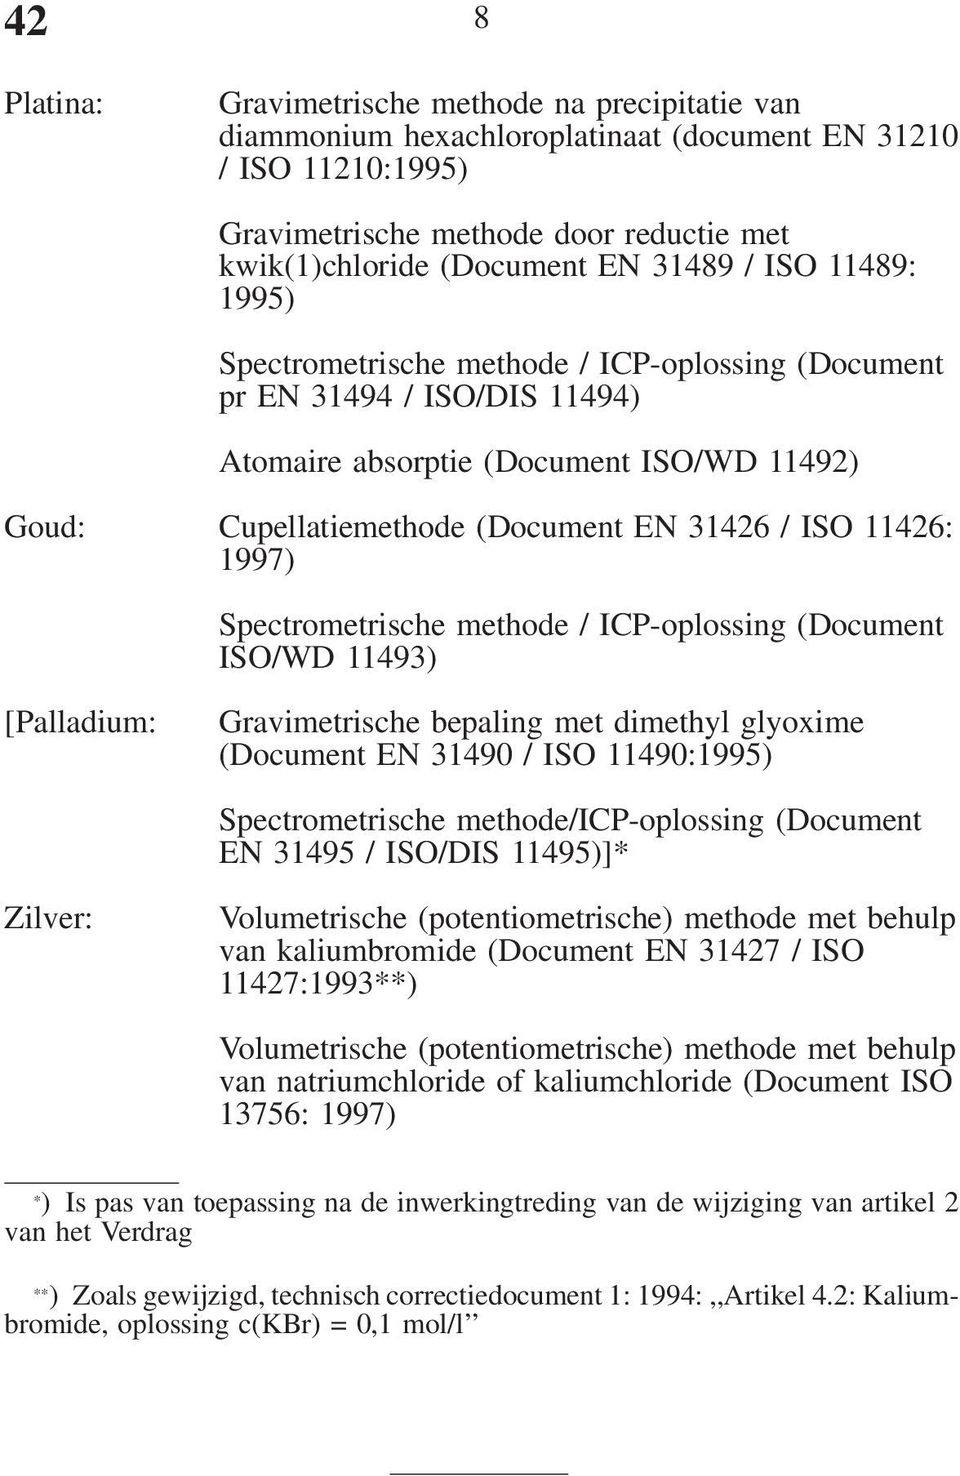 11426: 1997) Spectrometrische methode / ICP-oplossing (Document ISO/WD 11493) [Palladium: Gravimetrische bepaling met dimethyl glyoxime (Document EN 31490 / ISO 11490:1995) Spectrometrische